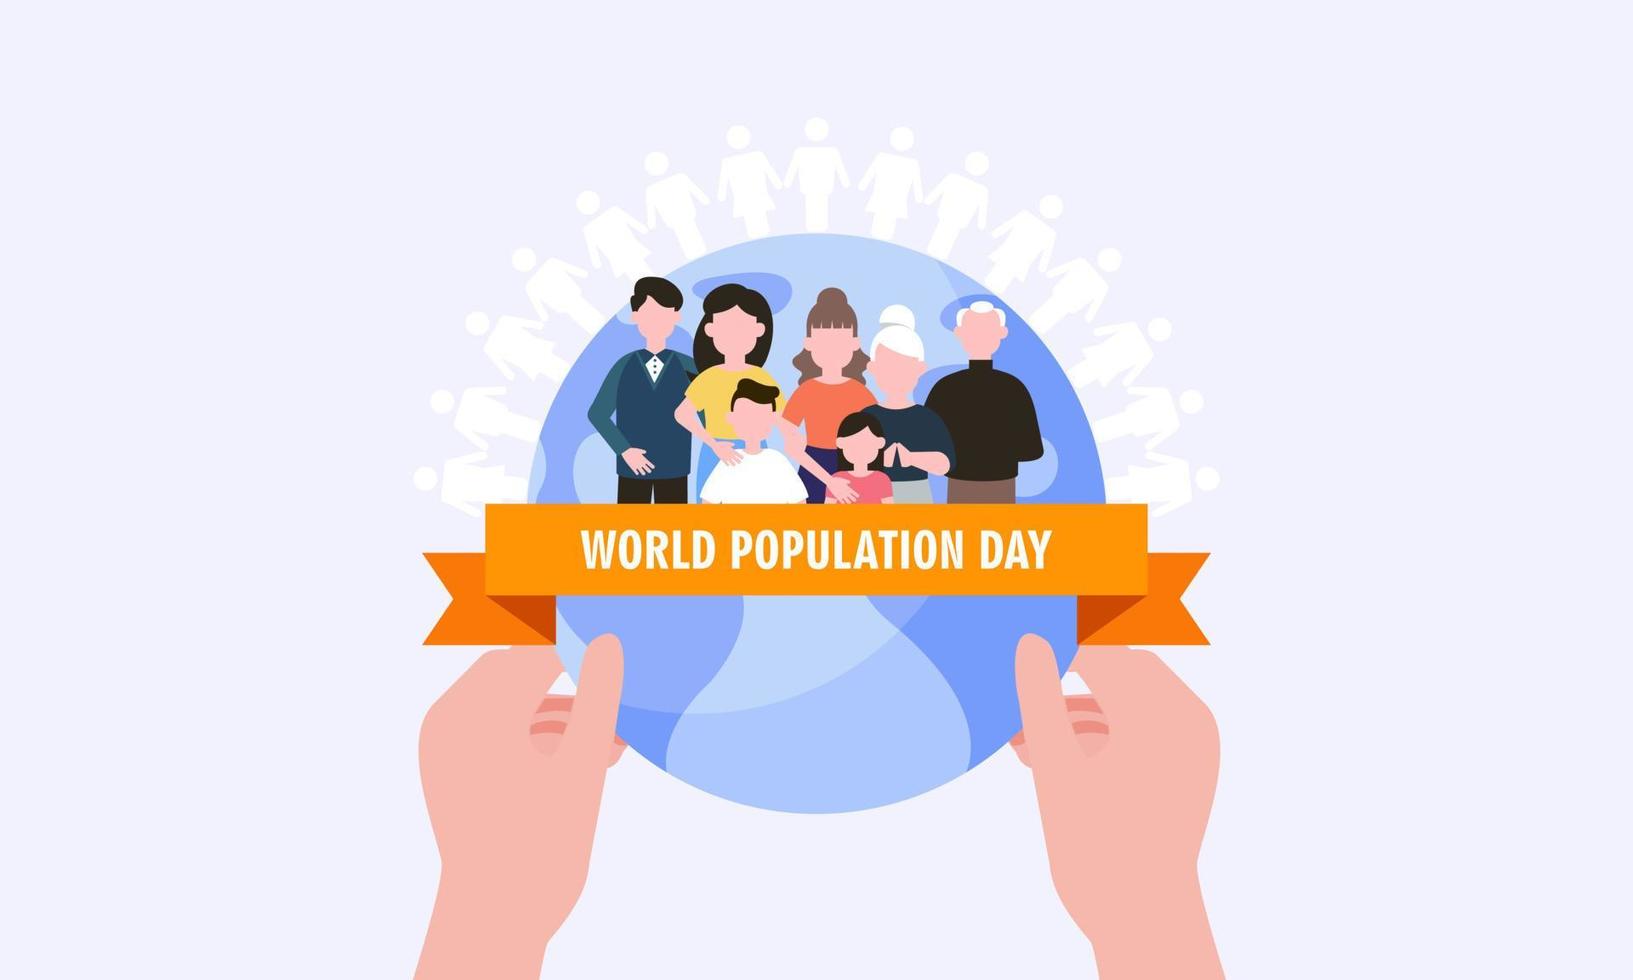 ilustración, cartel o pancarta del día mundial de la población vector